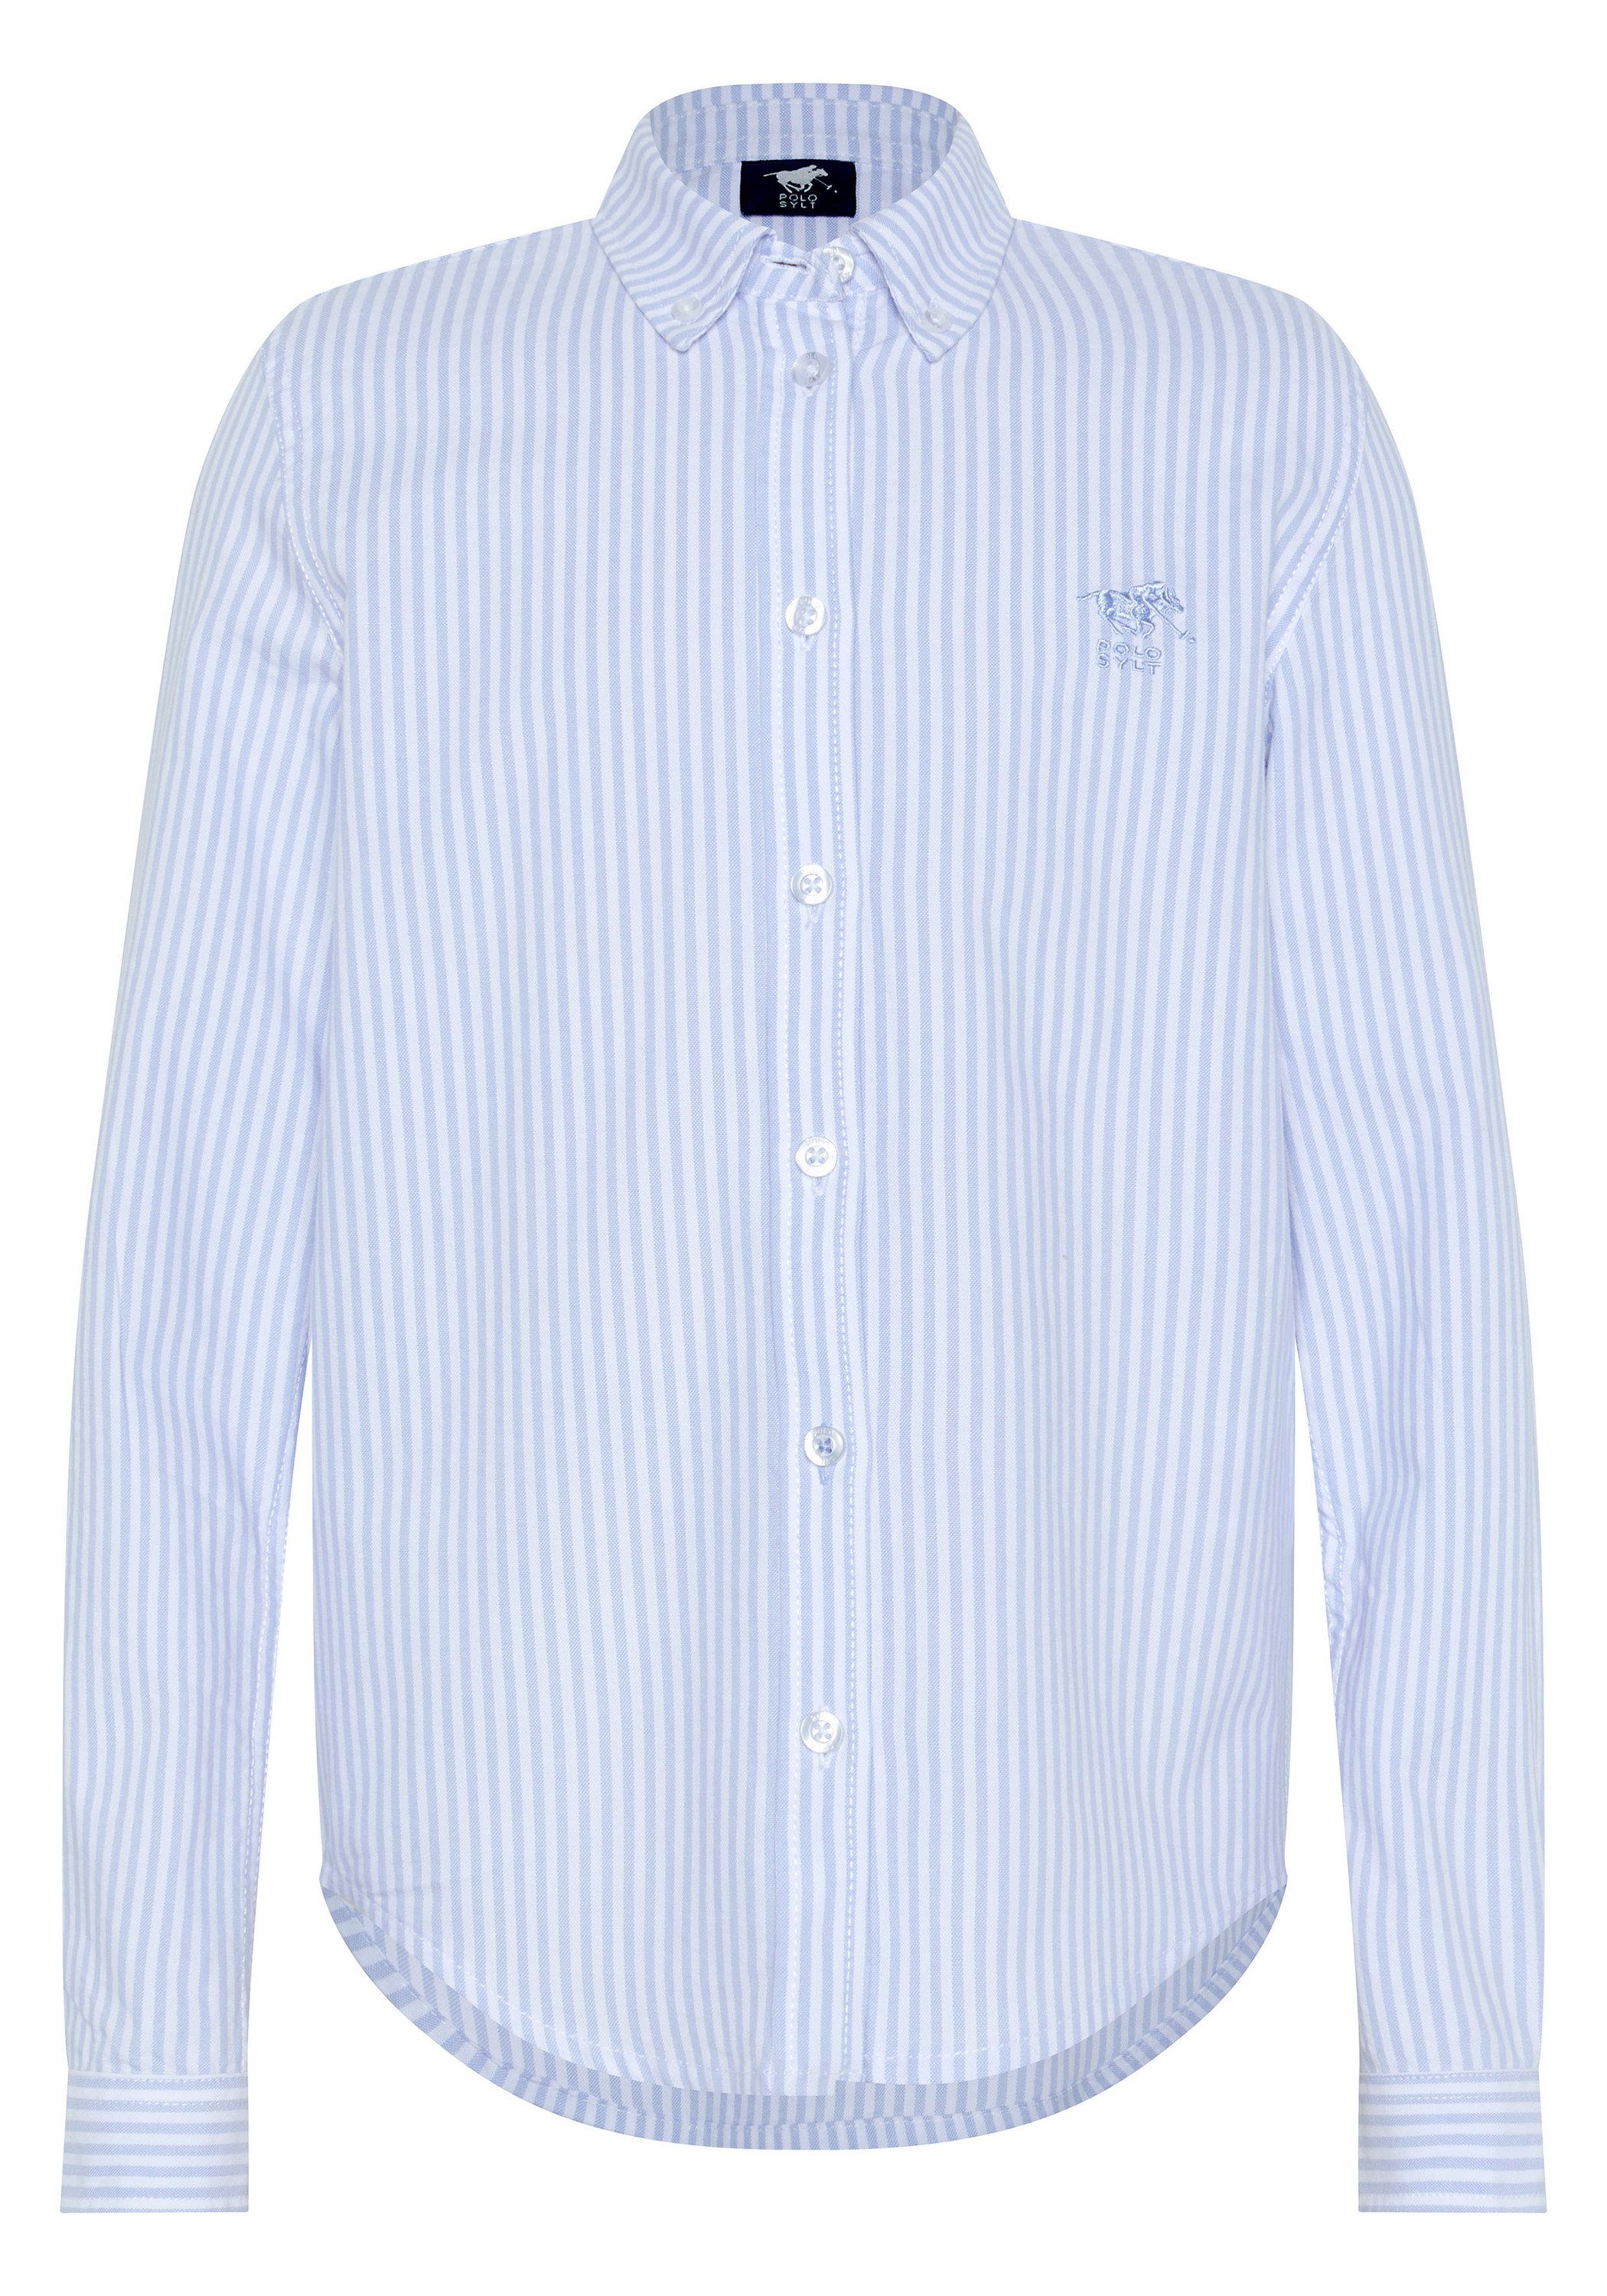 Polo Sylt Hemdbluse mit Streifenmuster 4010 Light Blue/White